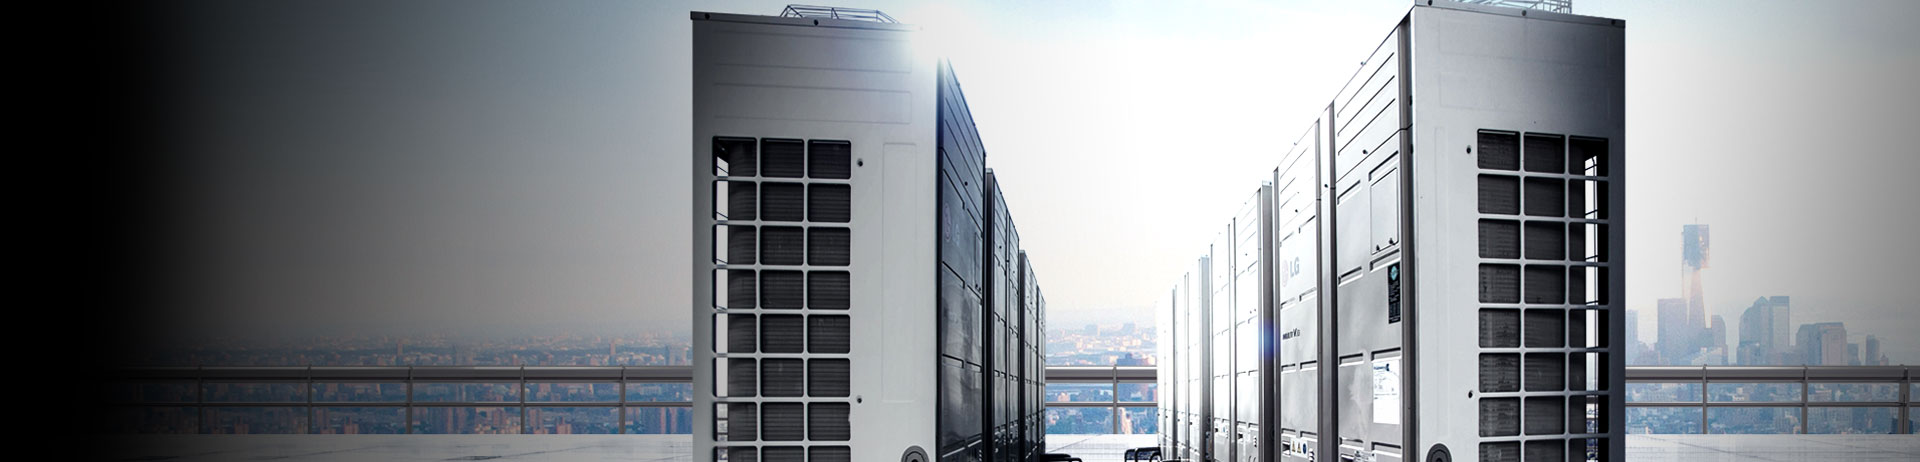 Dòng sản phẩm Multi V đưa ra giải pháp HVAC toàn diện cho tất cả các kiểu tòa nhà, từ khu dân cư cho đến các cơ sở công nghiệp.